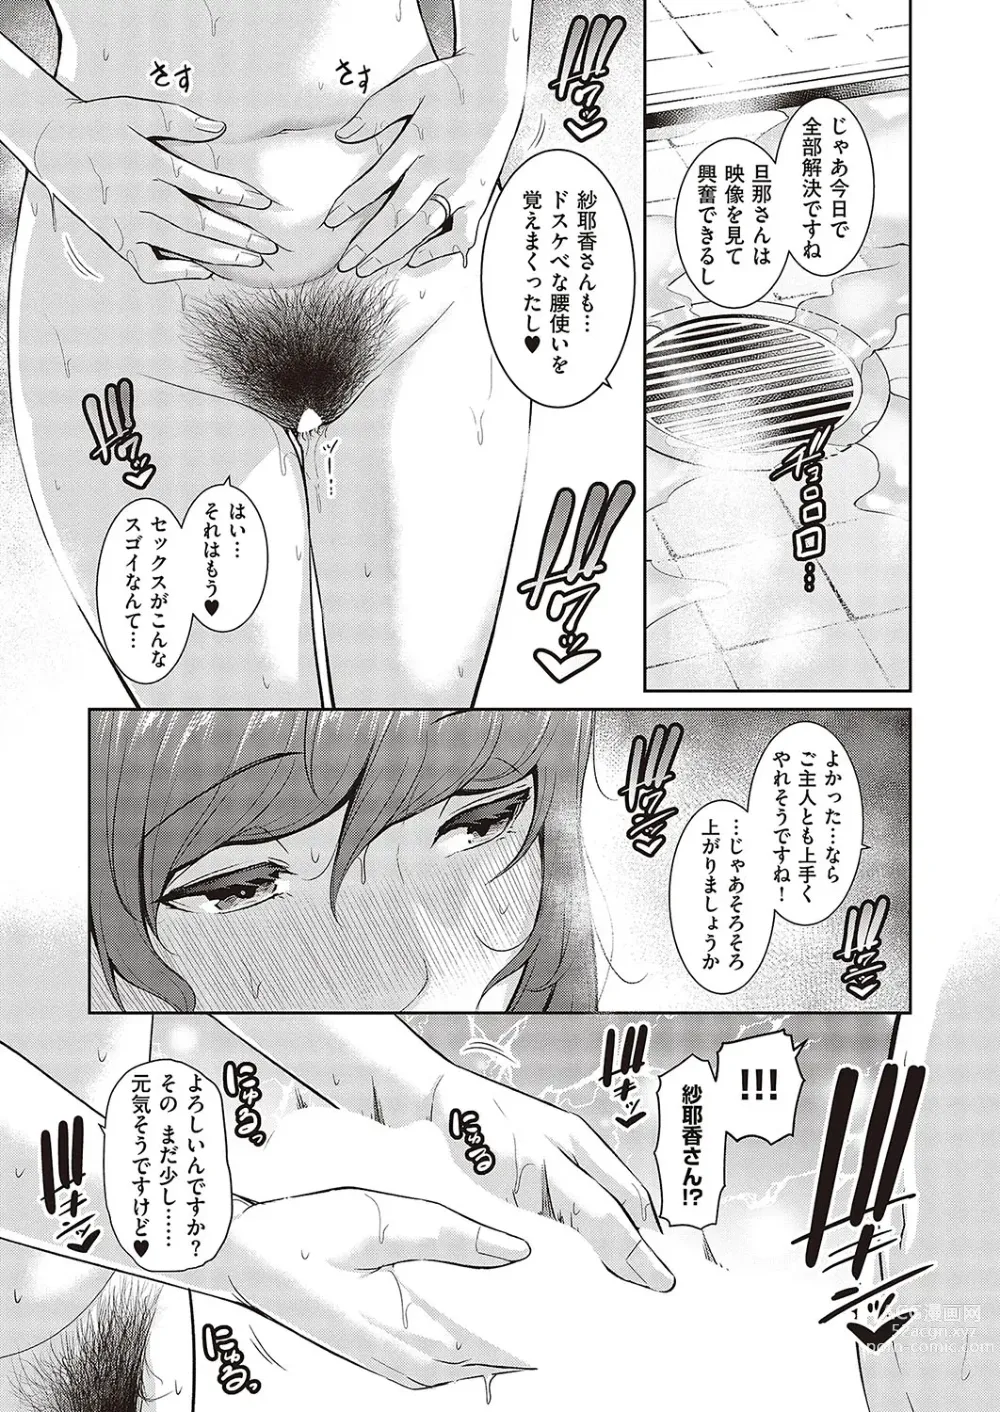 Page 63 of manga 種付けマッチングアプリ Cap.1-2